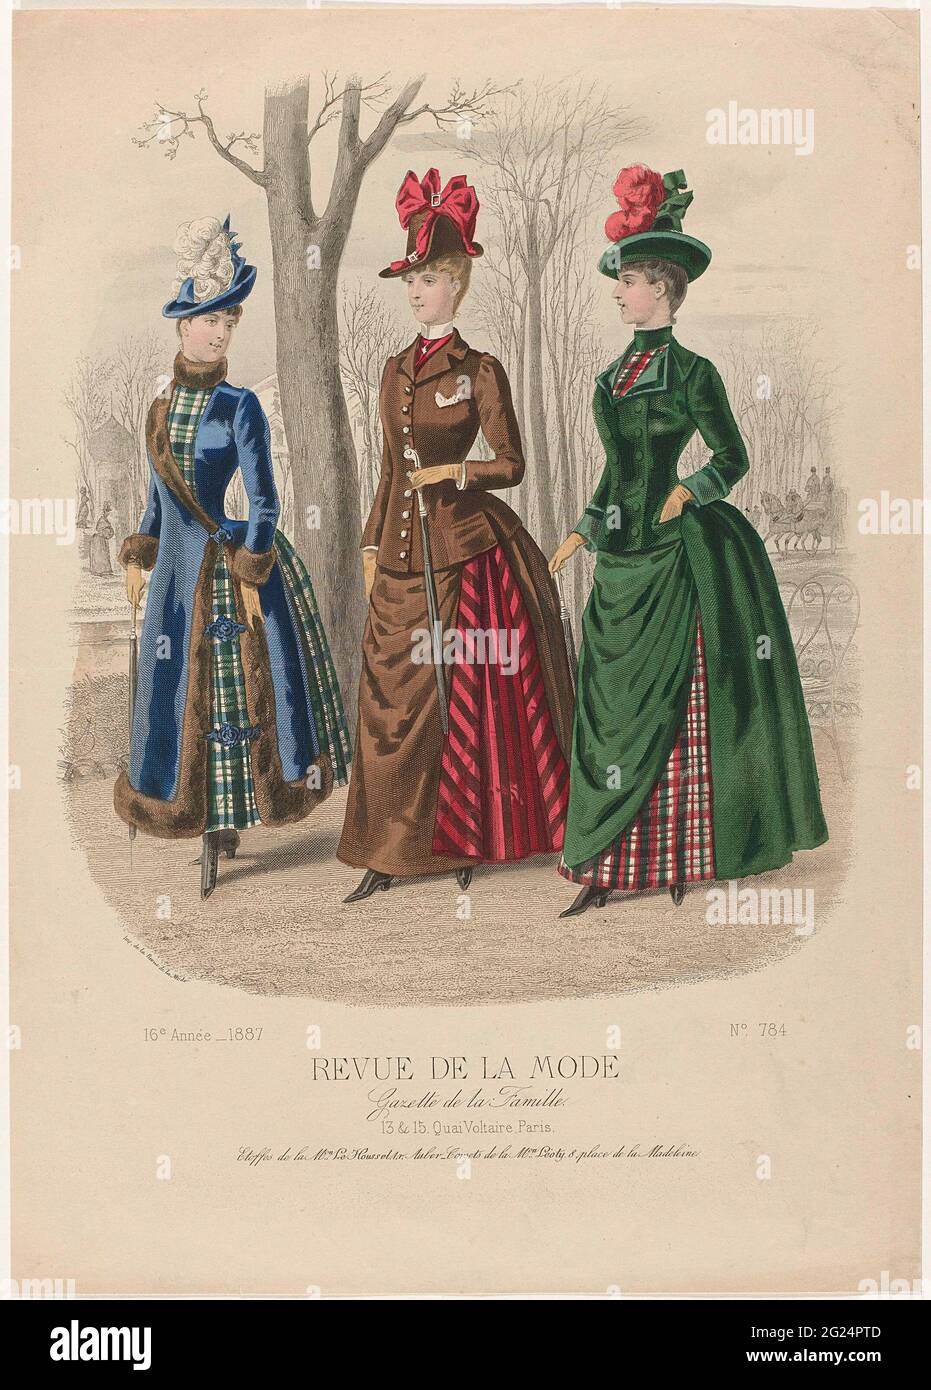 Revista de la moda, Gaceta de la Famille, Dimanche 9 Janvier 1887, 16th  Année, No. 784: Etoffes de la M.ON Le Houssel (...). Tres mujeres caminando  en un parque, en el fondo